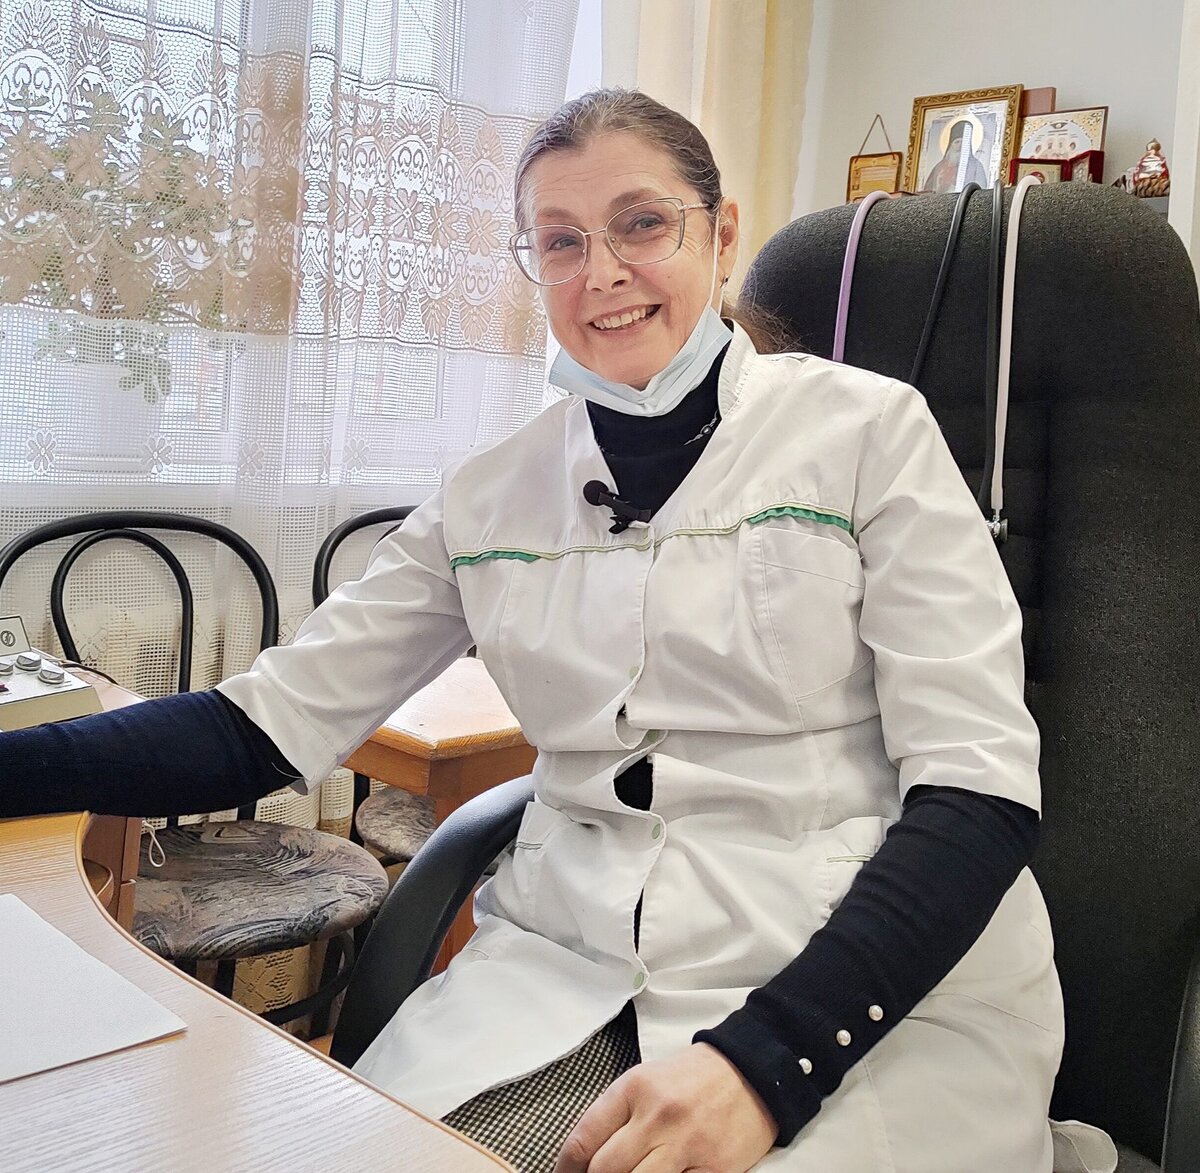 Врач терапевт гомеопат - запись на прием, цены на услуги Санкт-Петербург